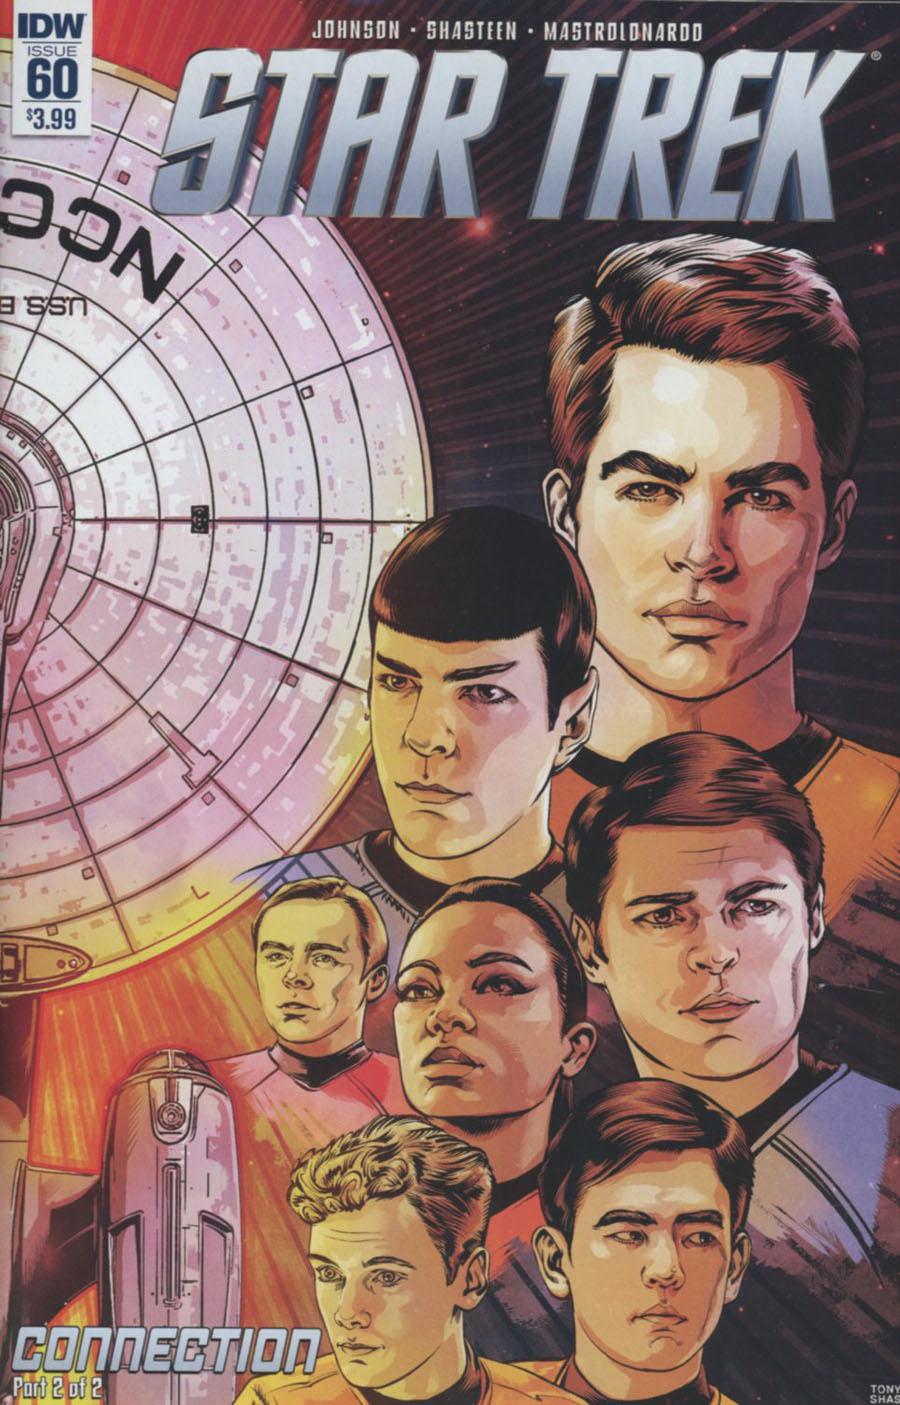 Star Trek (IDW) Vol. 1 #60